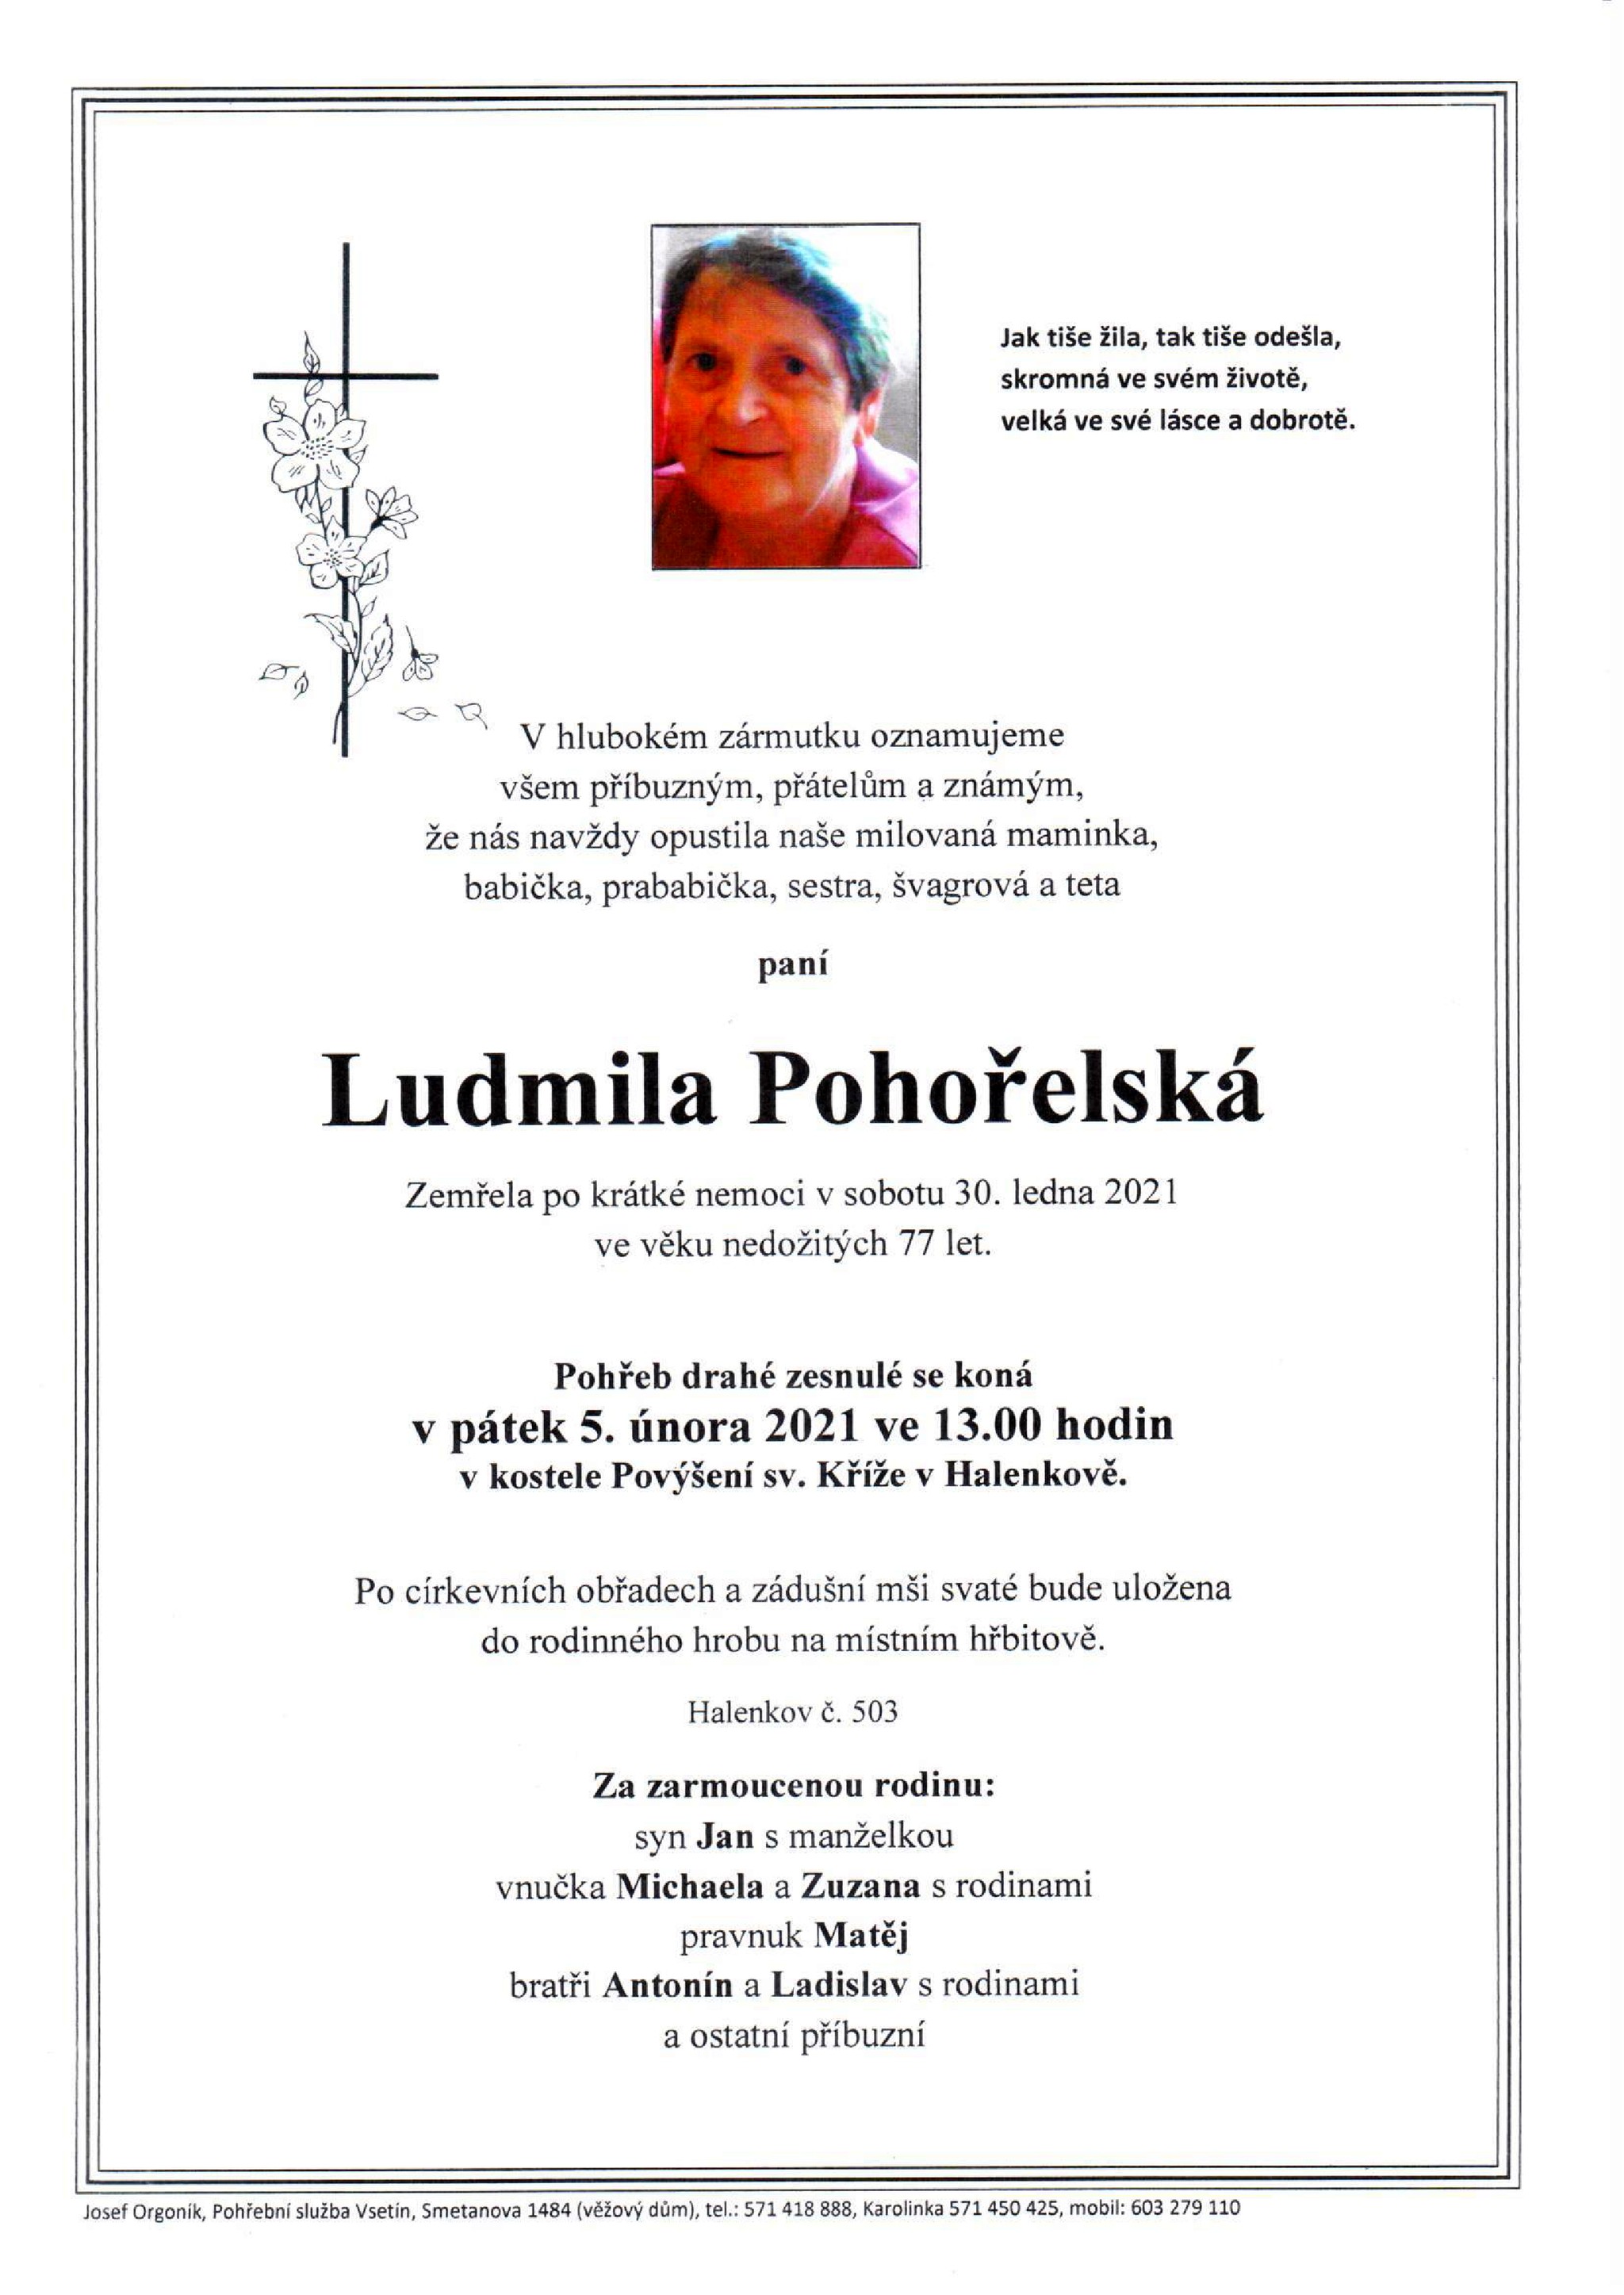 Ludmila Pohořelská